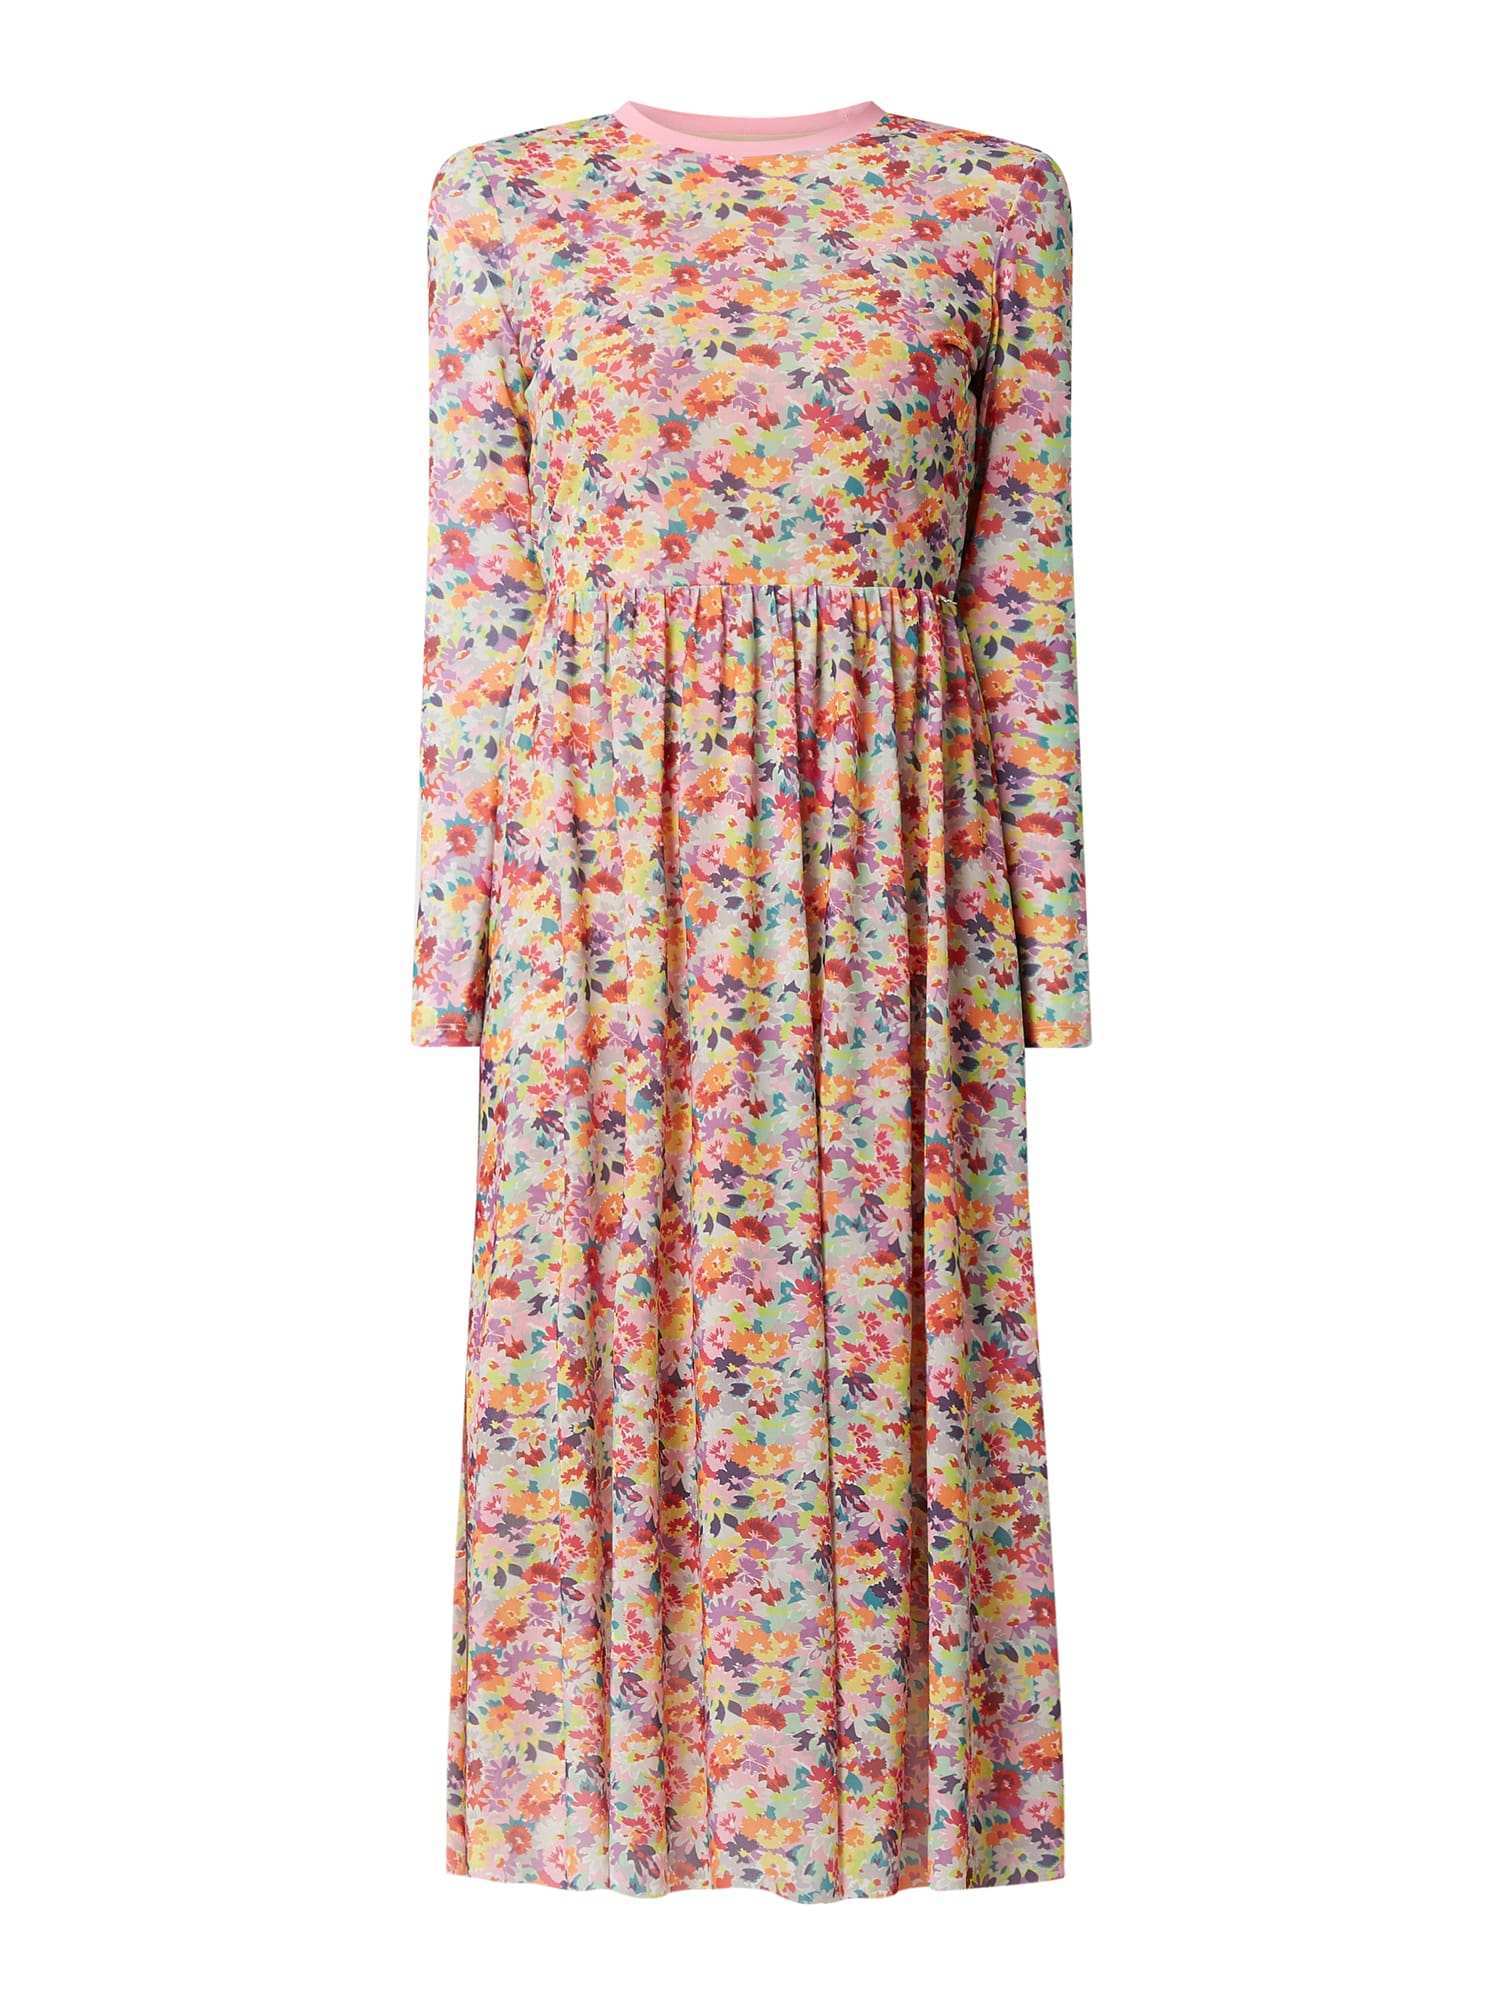 Tom Tailor Denim Kleid Aus Mesh Mit Floralem Muster In Rose Online Kaufen 1100036 P C Online Shop